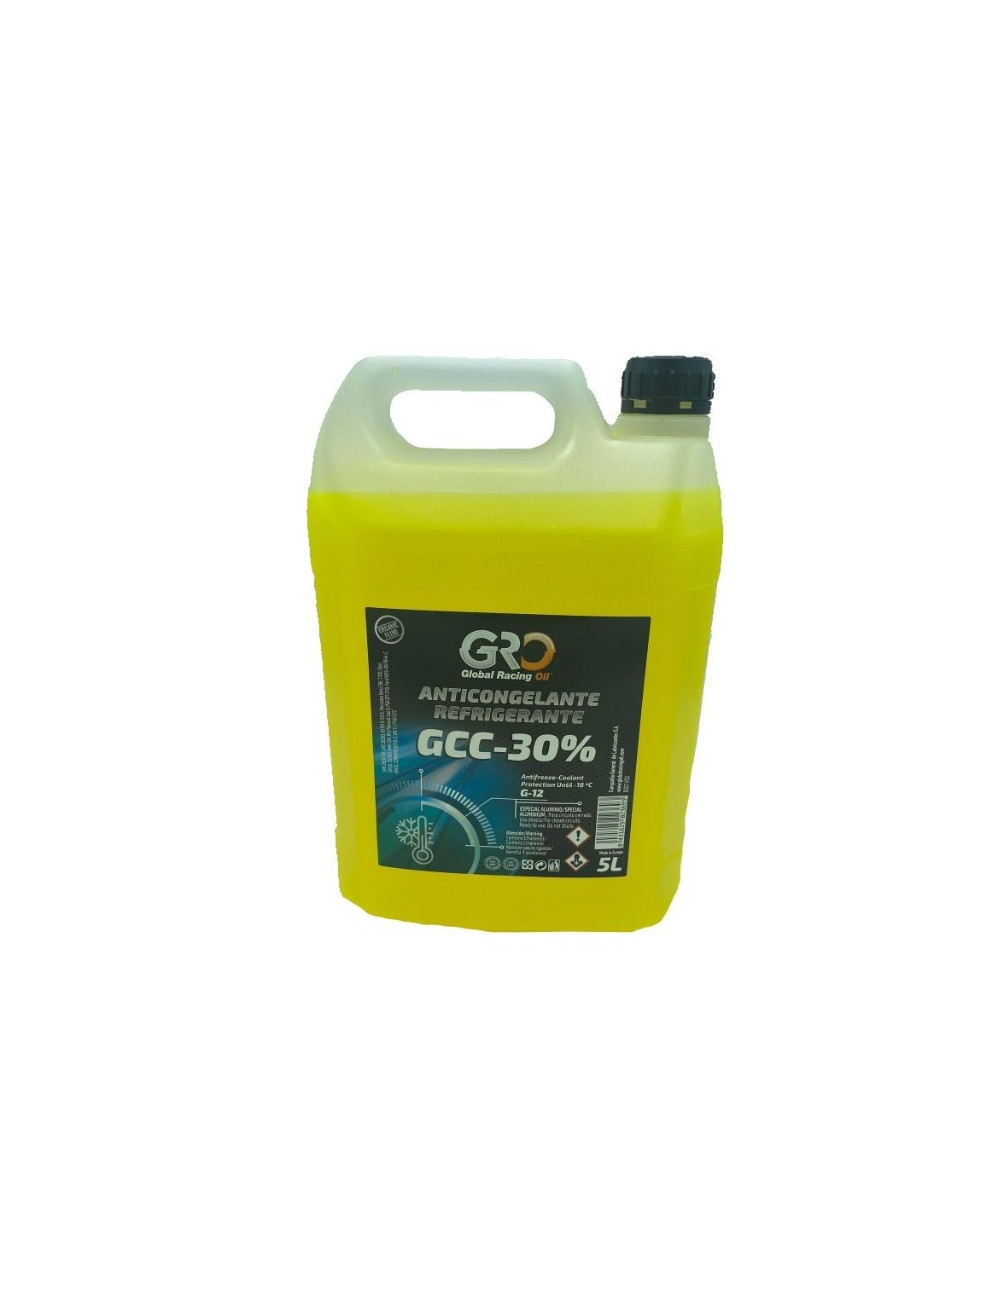 Líquido refrigerante y anticongelante GRO GCC- 30% LONG TIME - AMARILLO  Formato Caja 4u x 5L